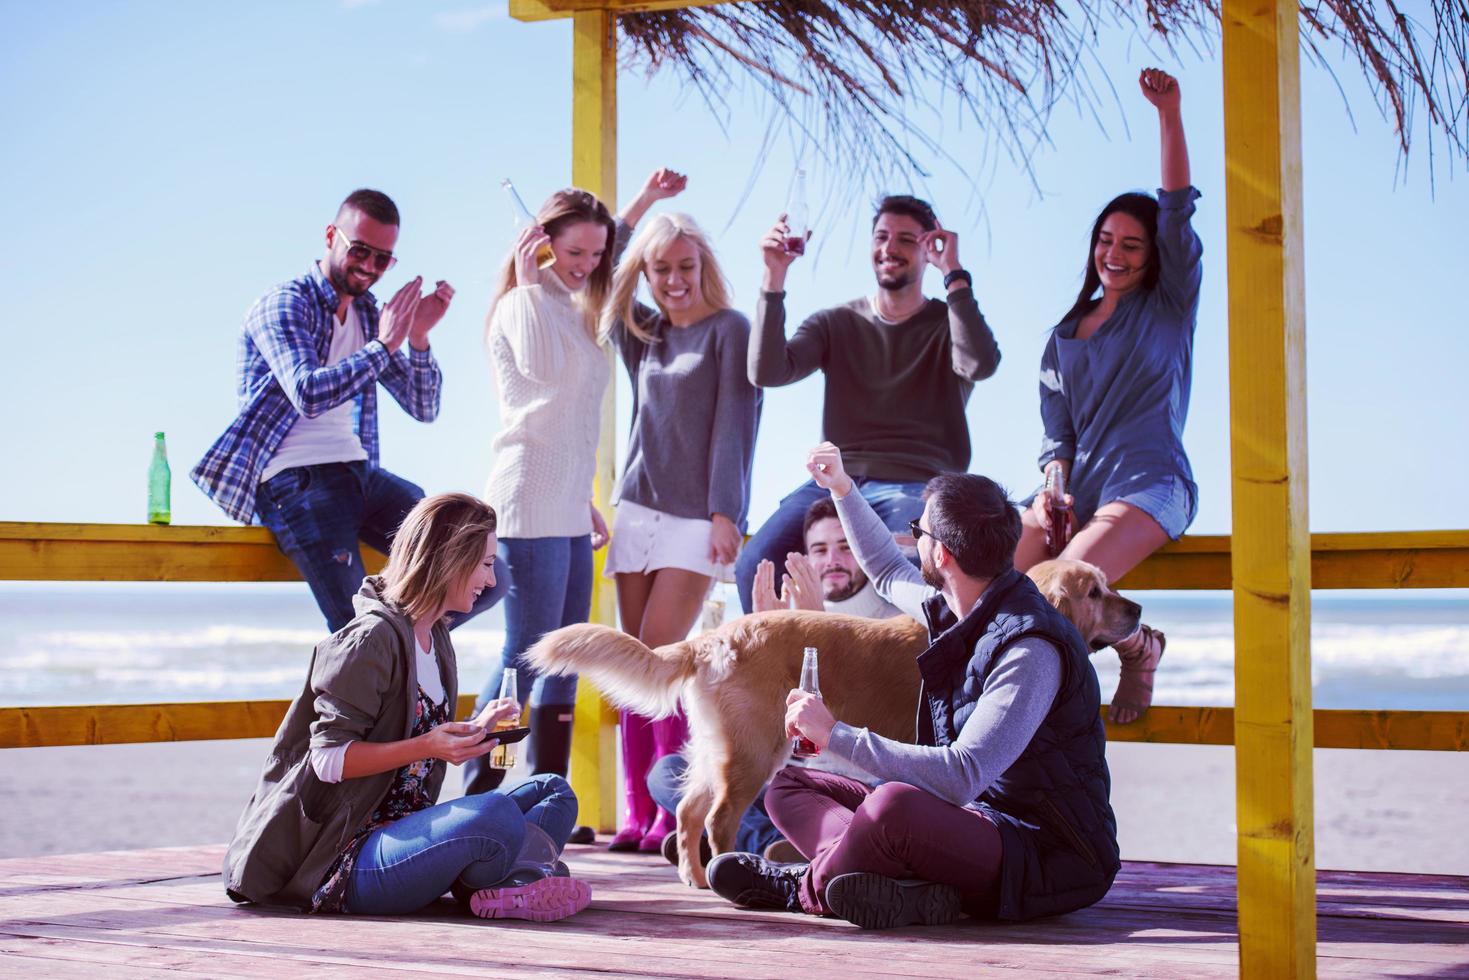 gruppe von freunden, die sich am herbsttag am strand amüsieren foto